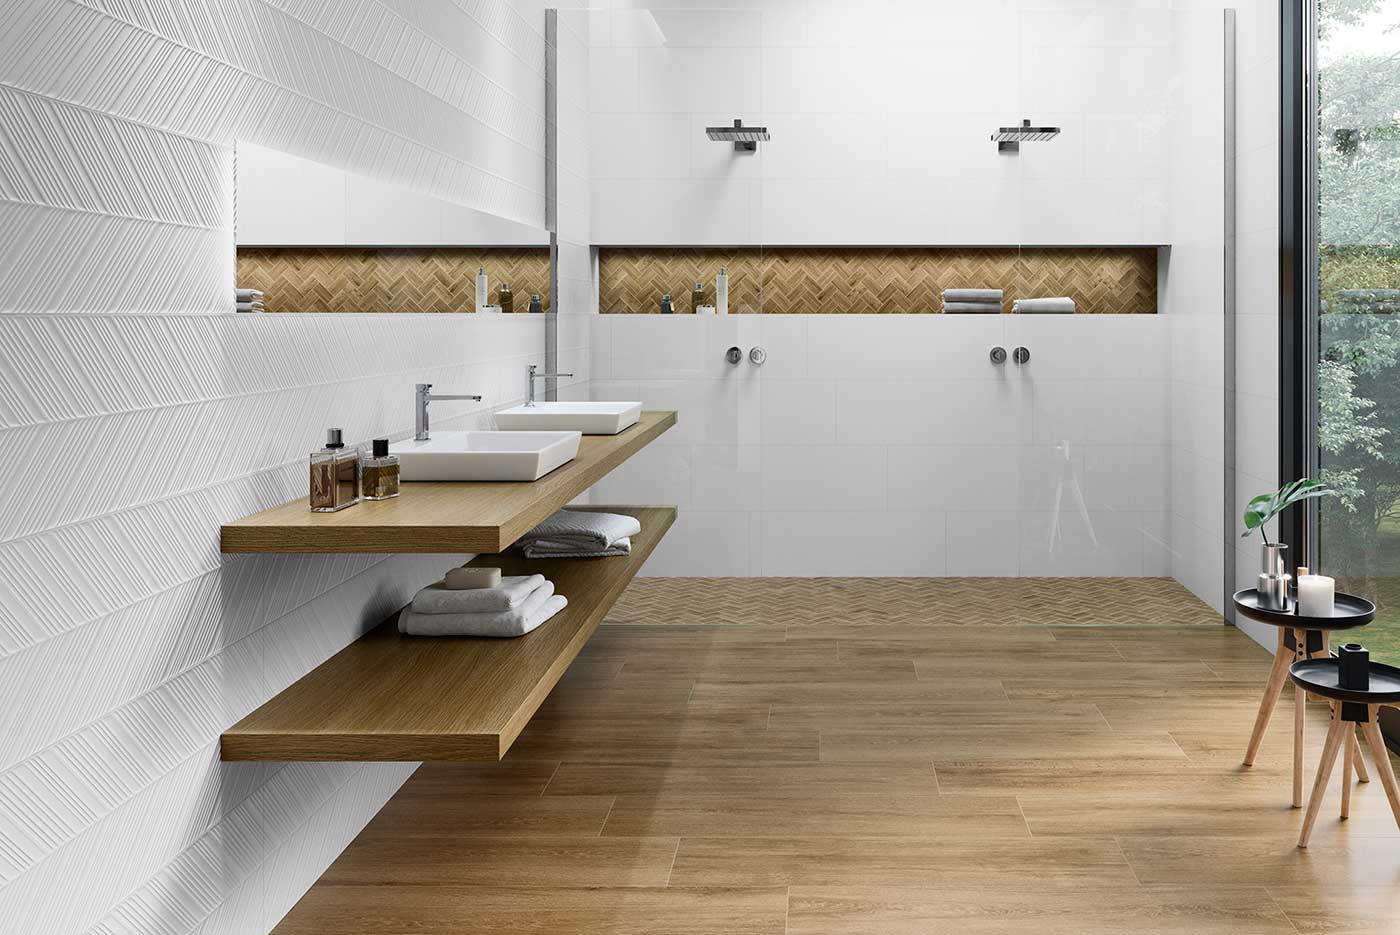 img/badezimmer-fliesen-design-ideen-weiss.jpg